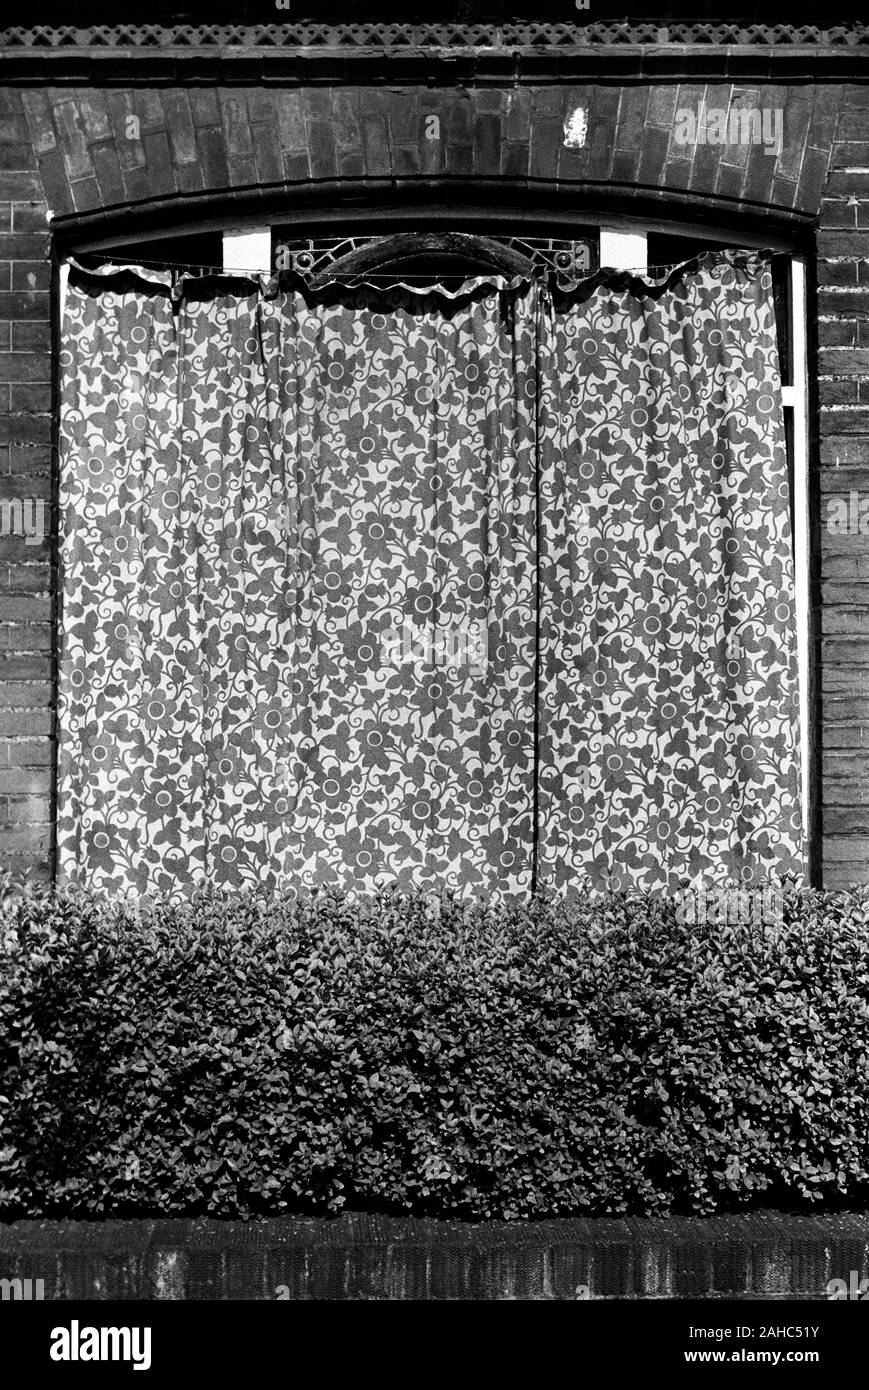 Extérieur de la maison avec rideau tiré à travers la fenêtre comme protection pour éviter les dommages de la forte lumière du soleil. Les cadres des fenêtres avaient été repeints récemment. Les rideaux extérieurs sont pour protéger le nouveau travail de peinture. Londres années 1971 1970 Royaume-Uni HOMER SYKES Banque D'Images